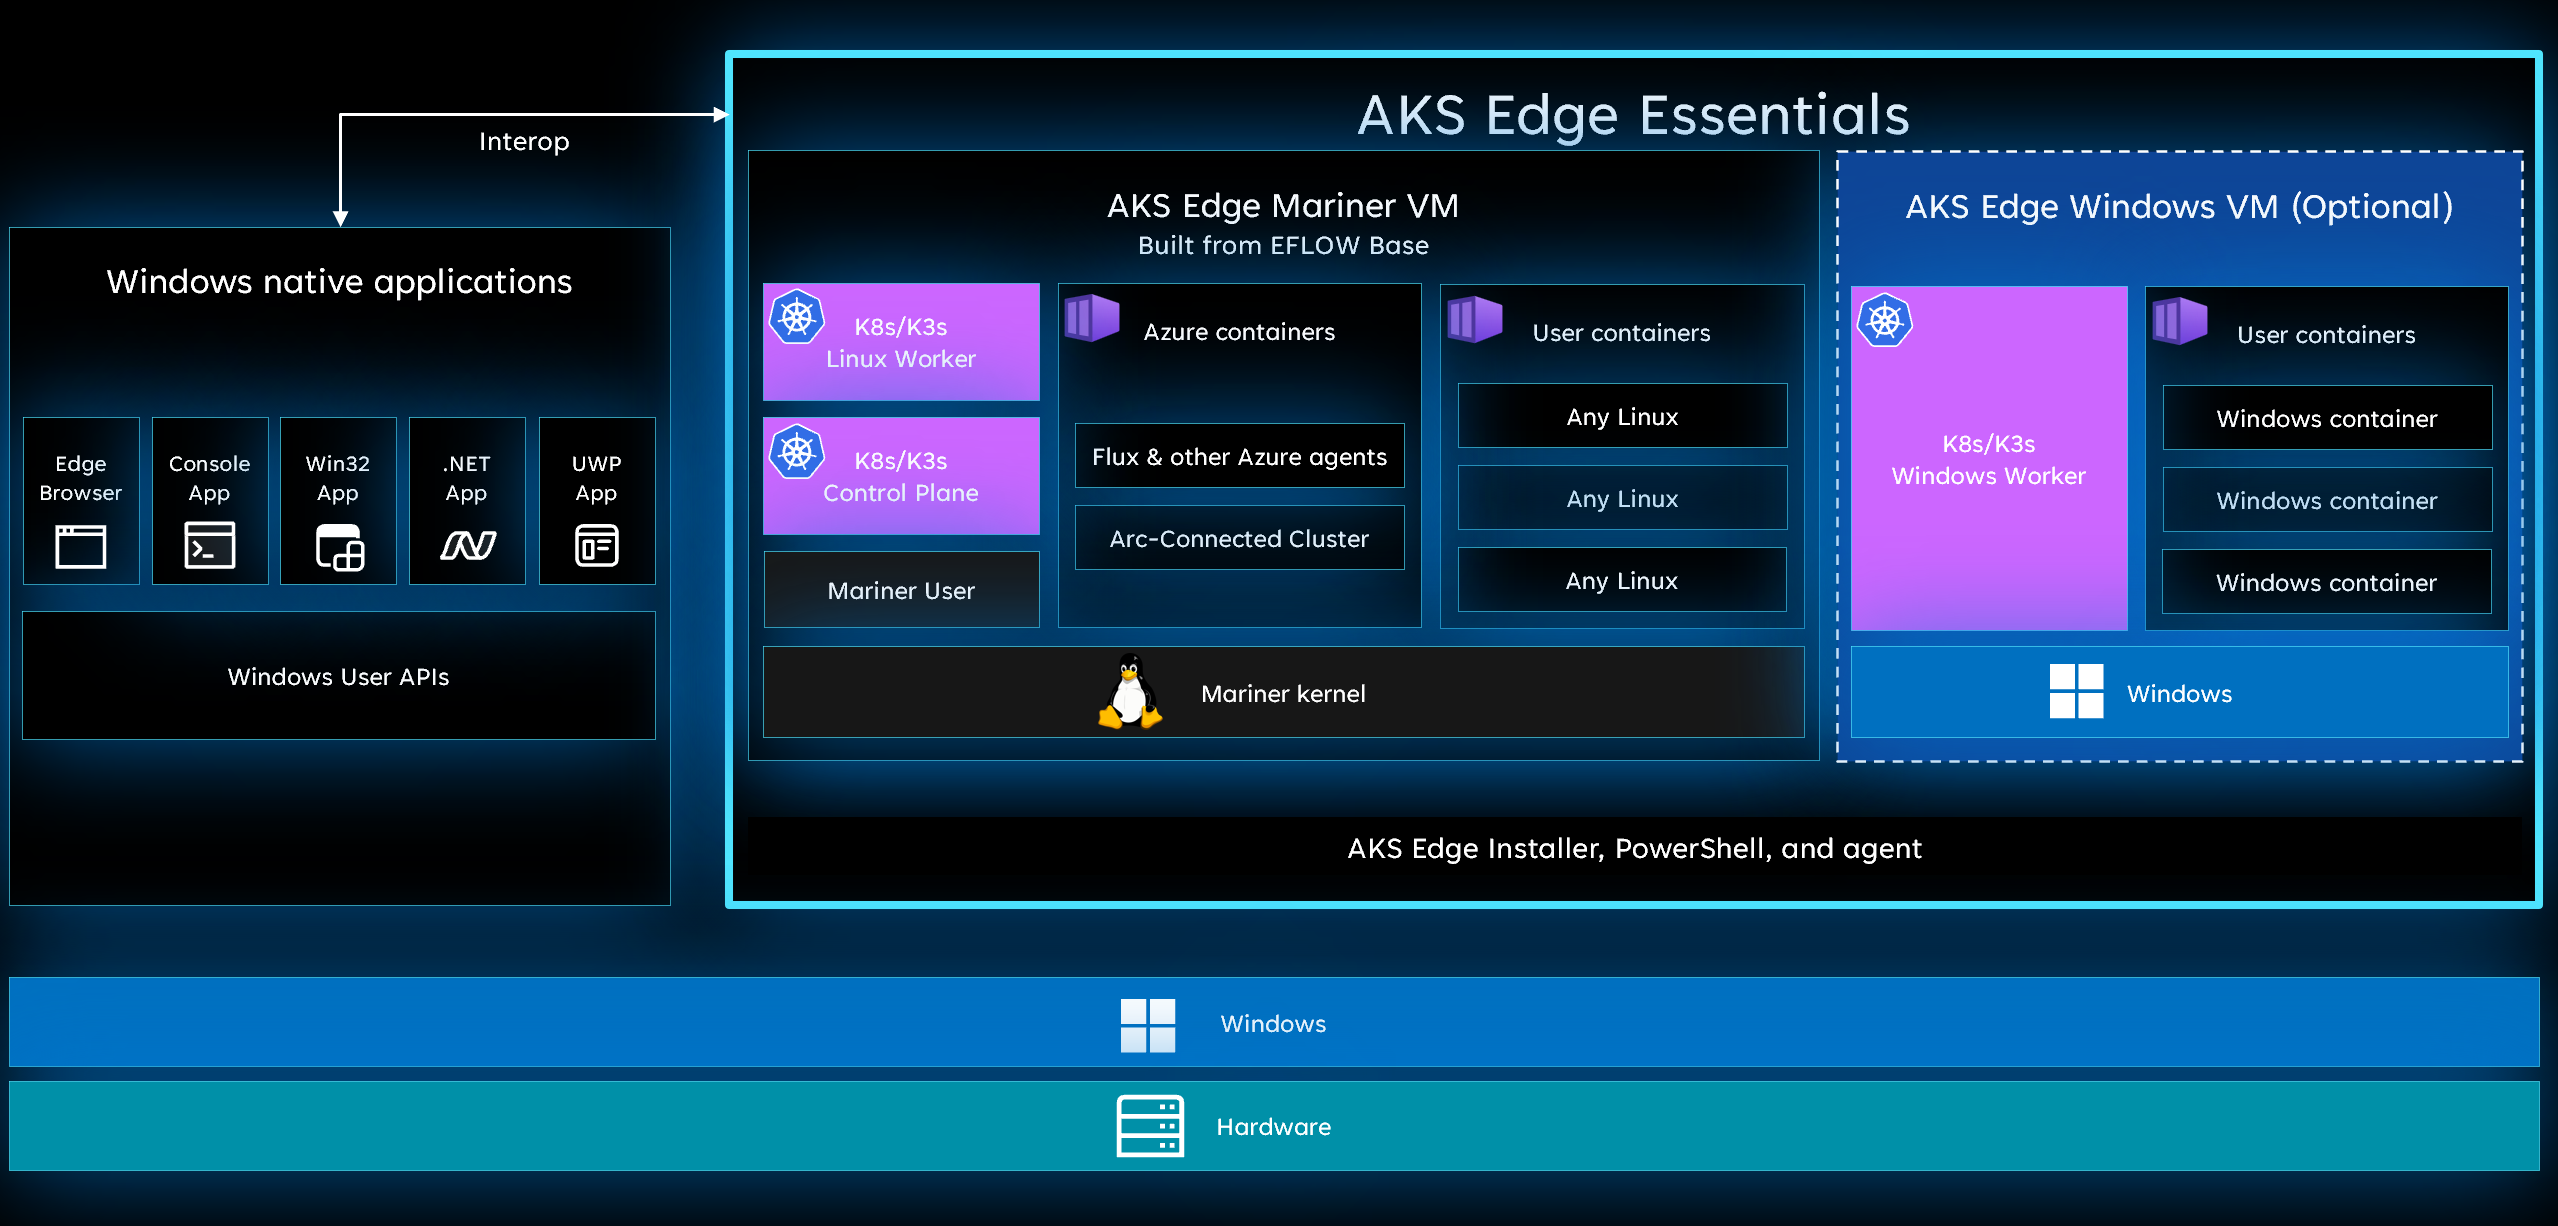 AKS Edge Essentials Interop 的圖表。